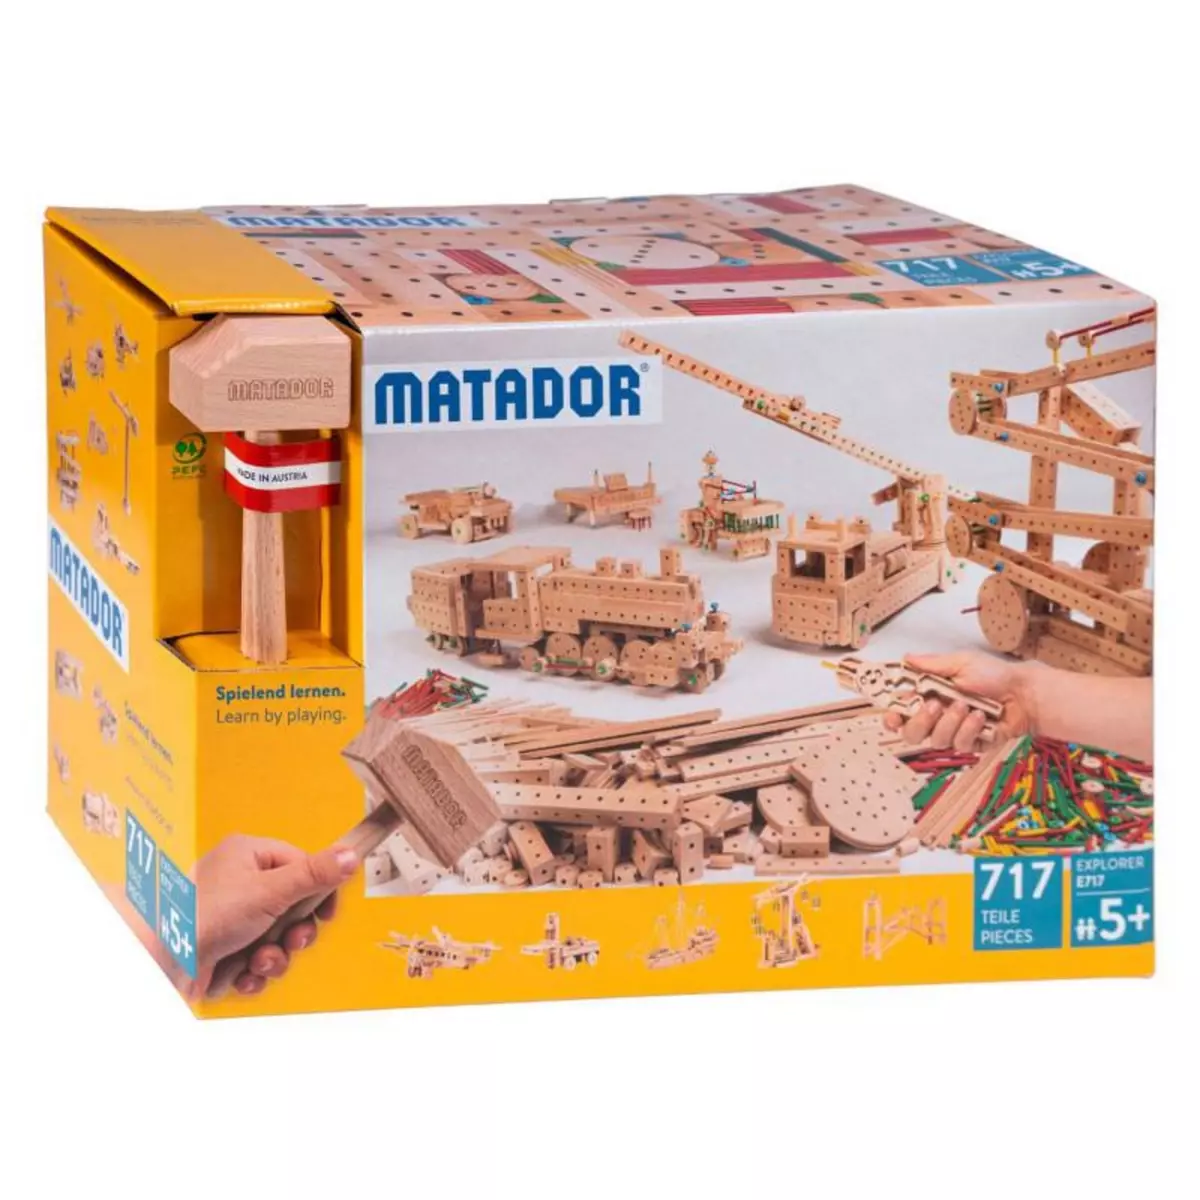 MATADOR Matador Explorer E717 Construction set Wood, 717 pcs.